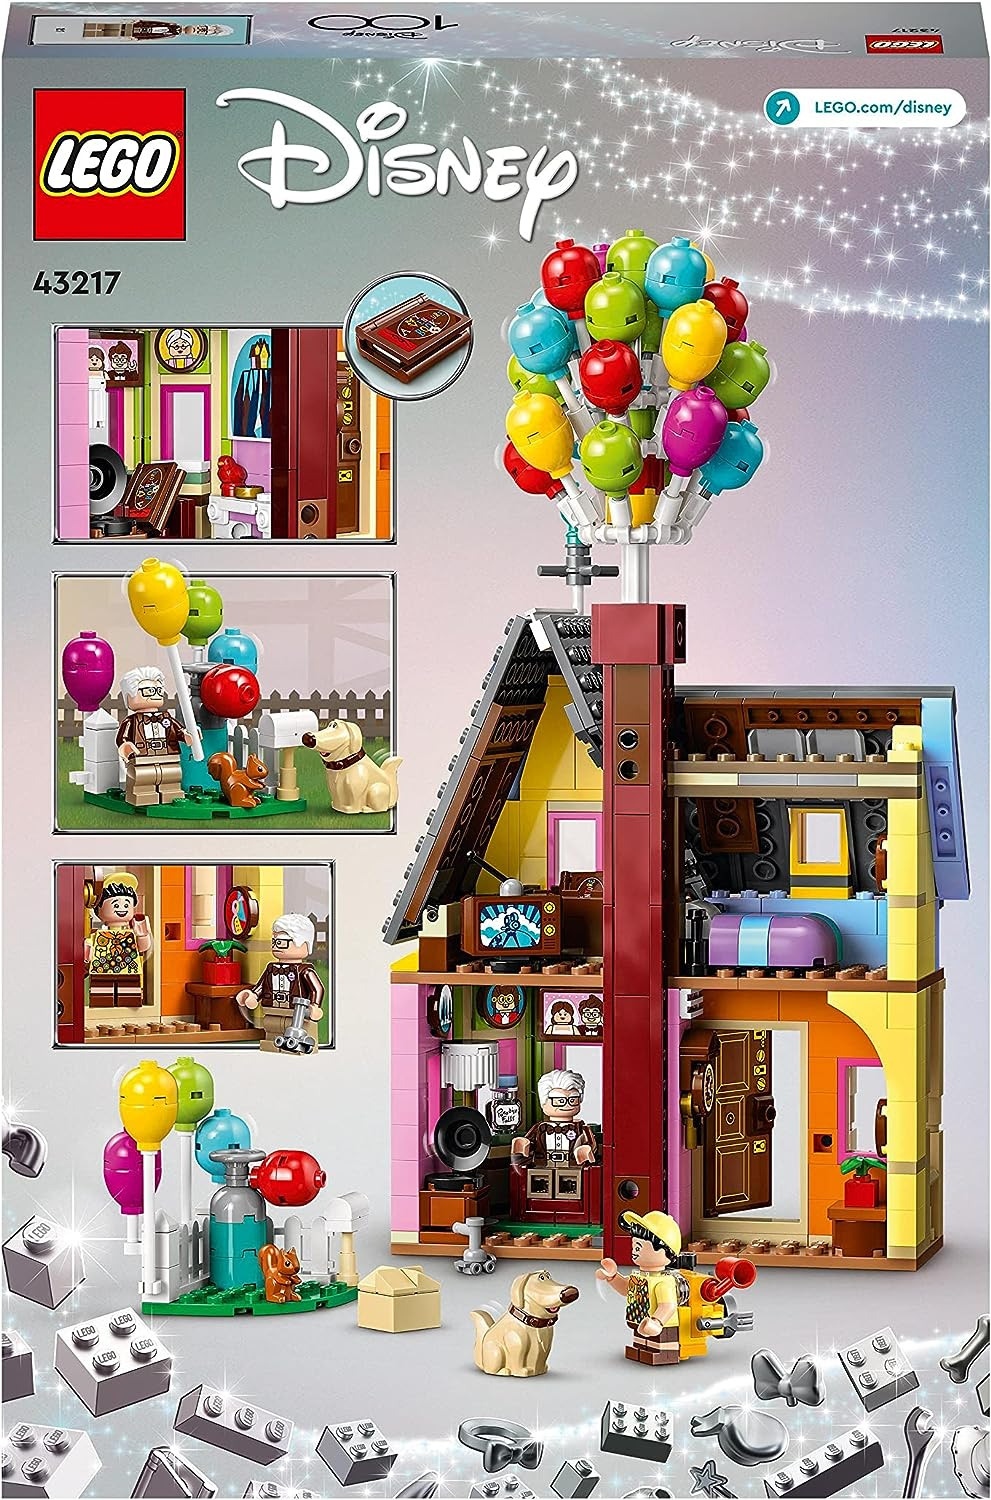 LEGO 43217 Brinquedo montável Disney e Pixar ‘Up’ House com balões, figuras de Carl, Russell e Dug, conjunto de modelos colecionáveis, série do 100º aniversário da Disney, ideia icônica para presente